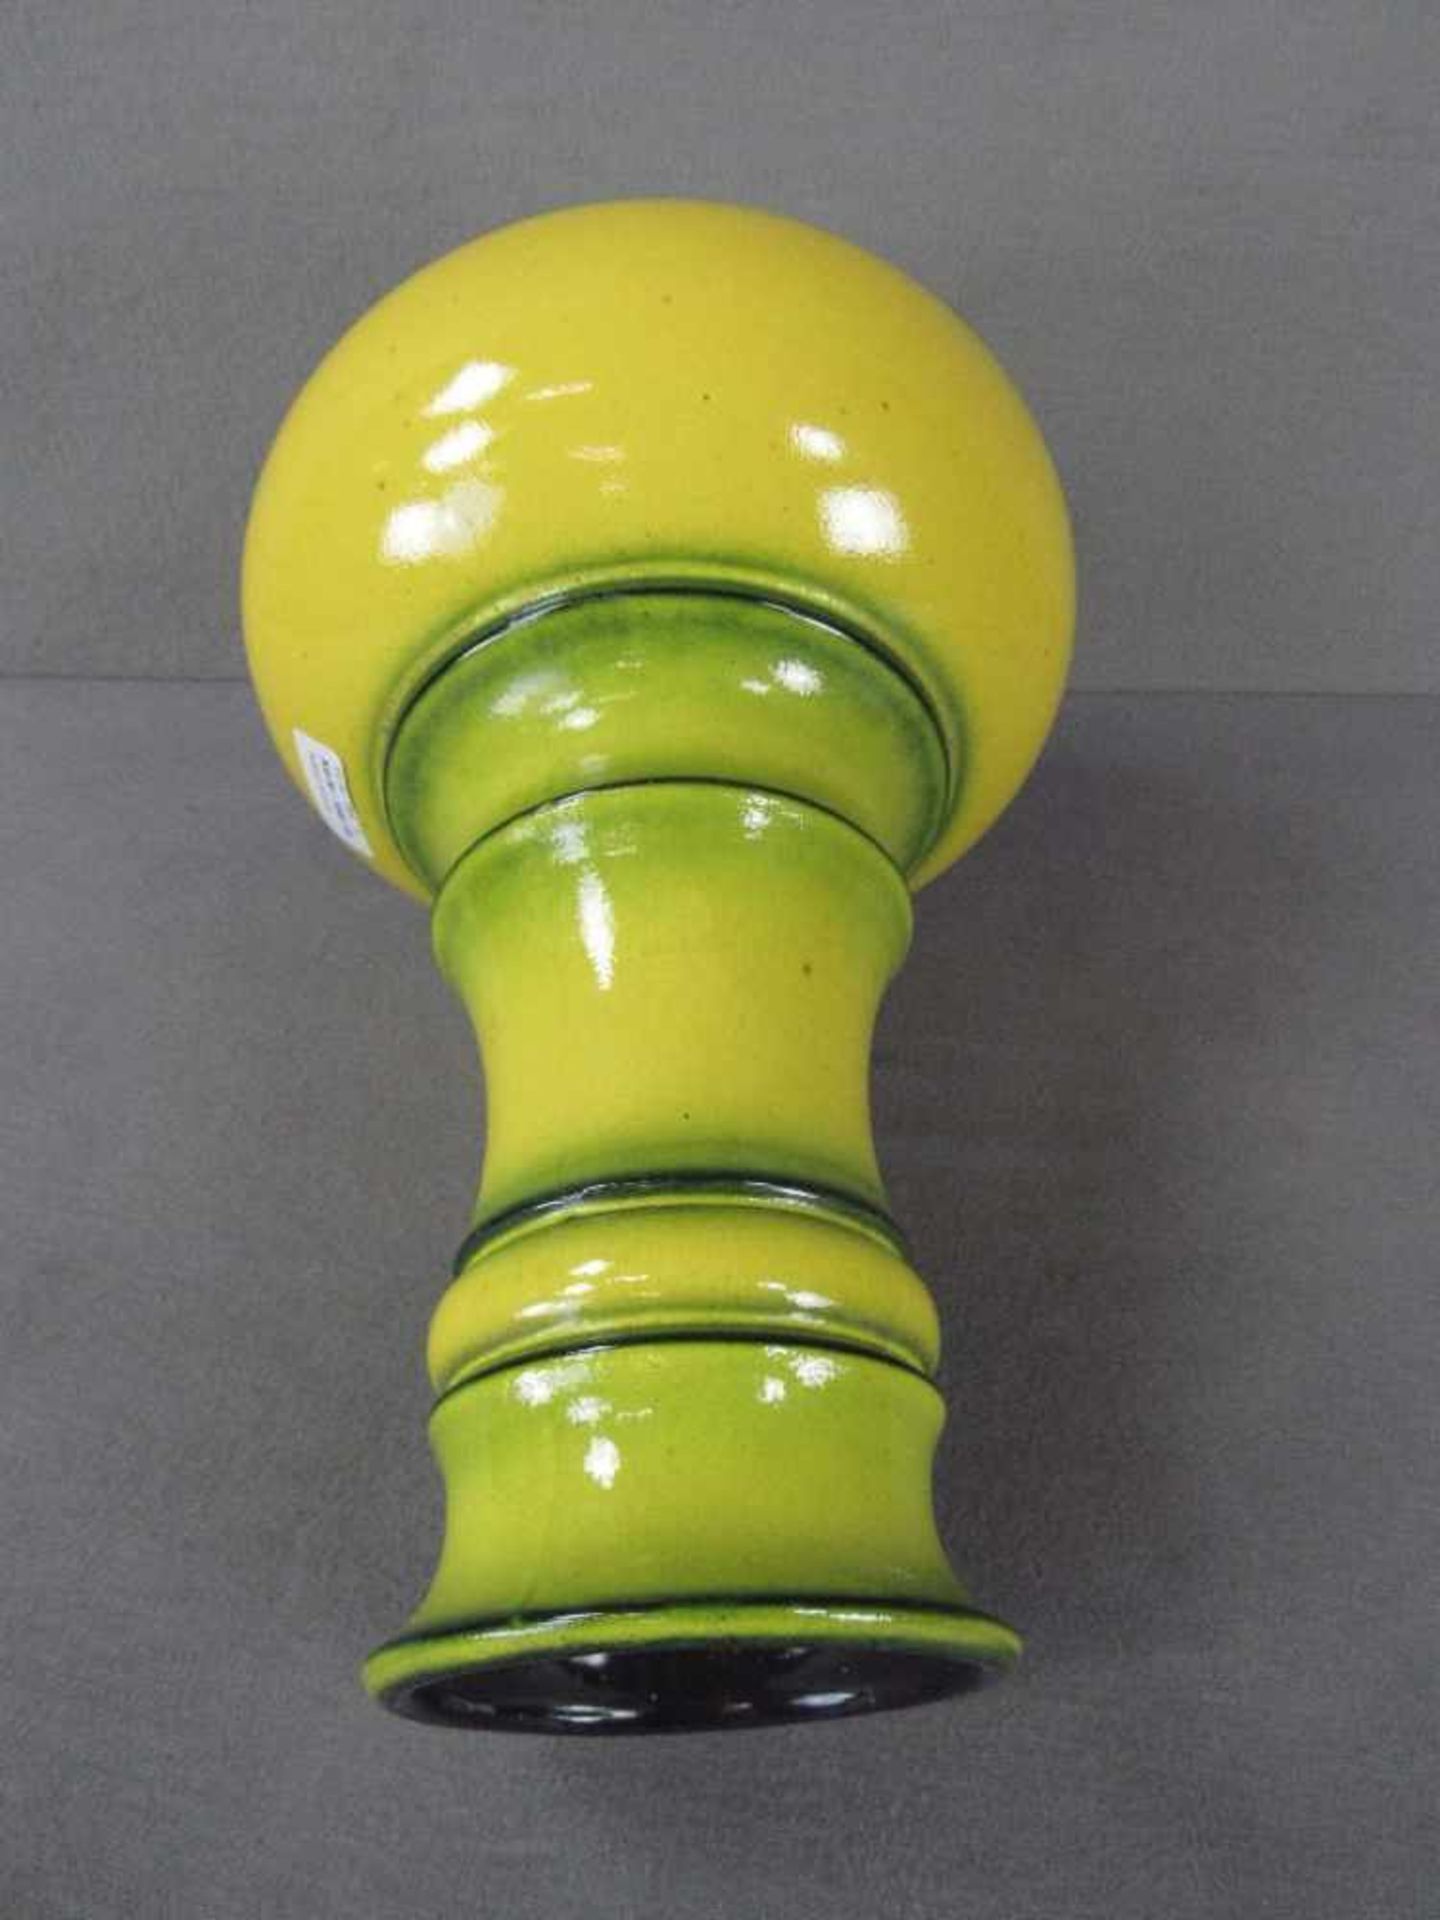 Designer Keramikvase gelb grün lasiert 40cm hoch gemarkt - Image 4 of 4